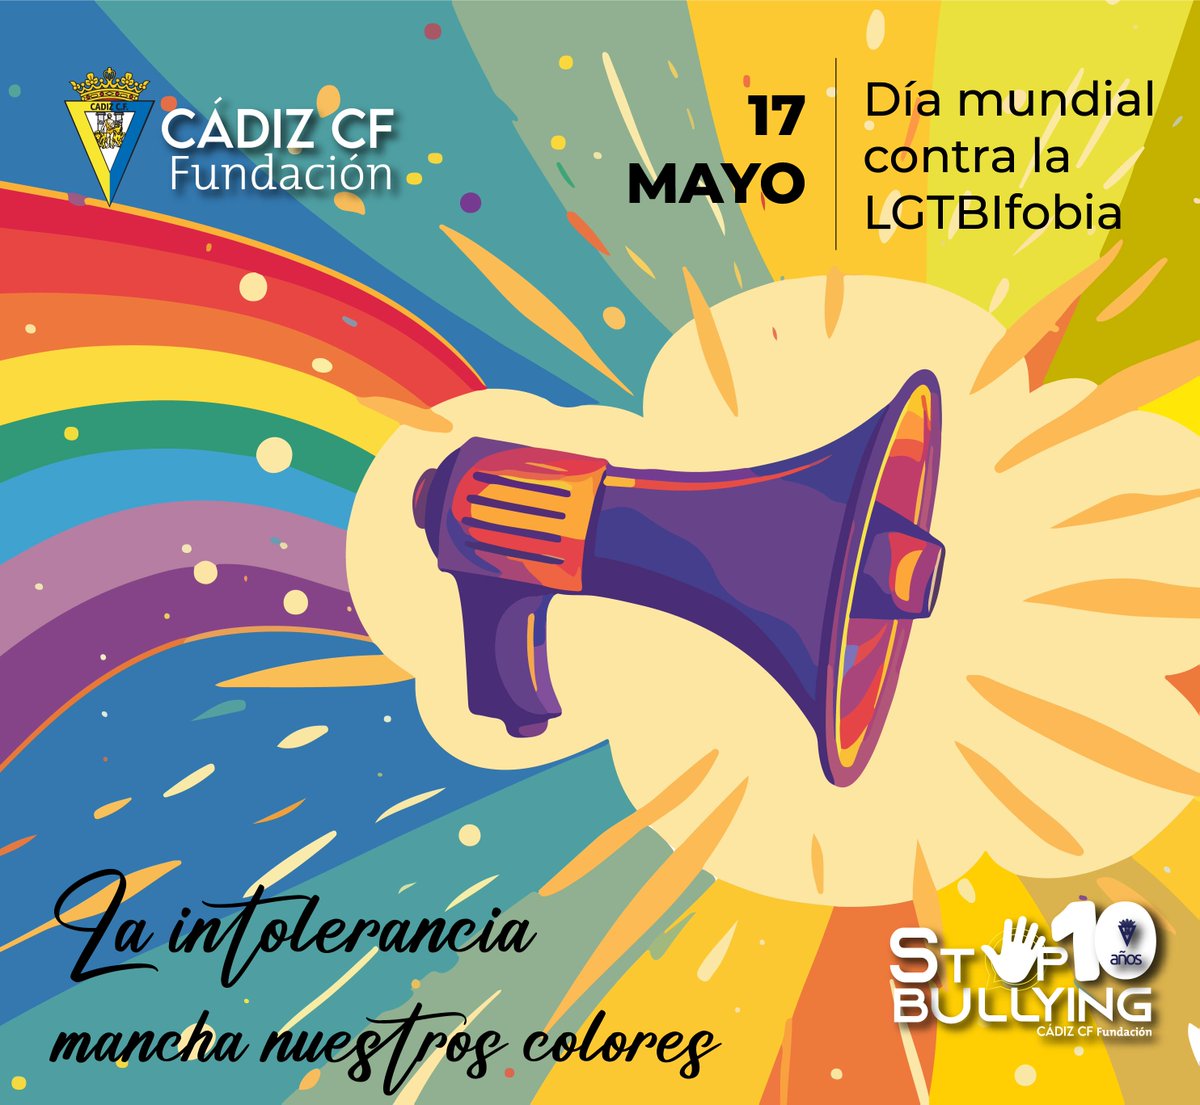 🏳️‍🌈 En el #DíaMundialContralaLGTBIfobia, recordamos que 'La intolerancia mancha nuestros colores' En el @Cadiz_CF, luchamos por la igualdad y el respeto para todos y todas 💪 #Stopbullying